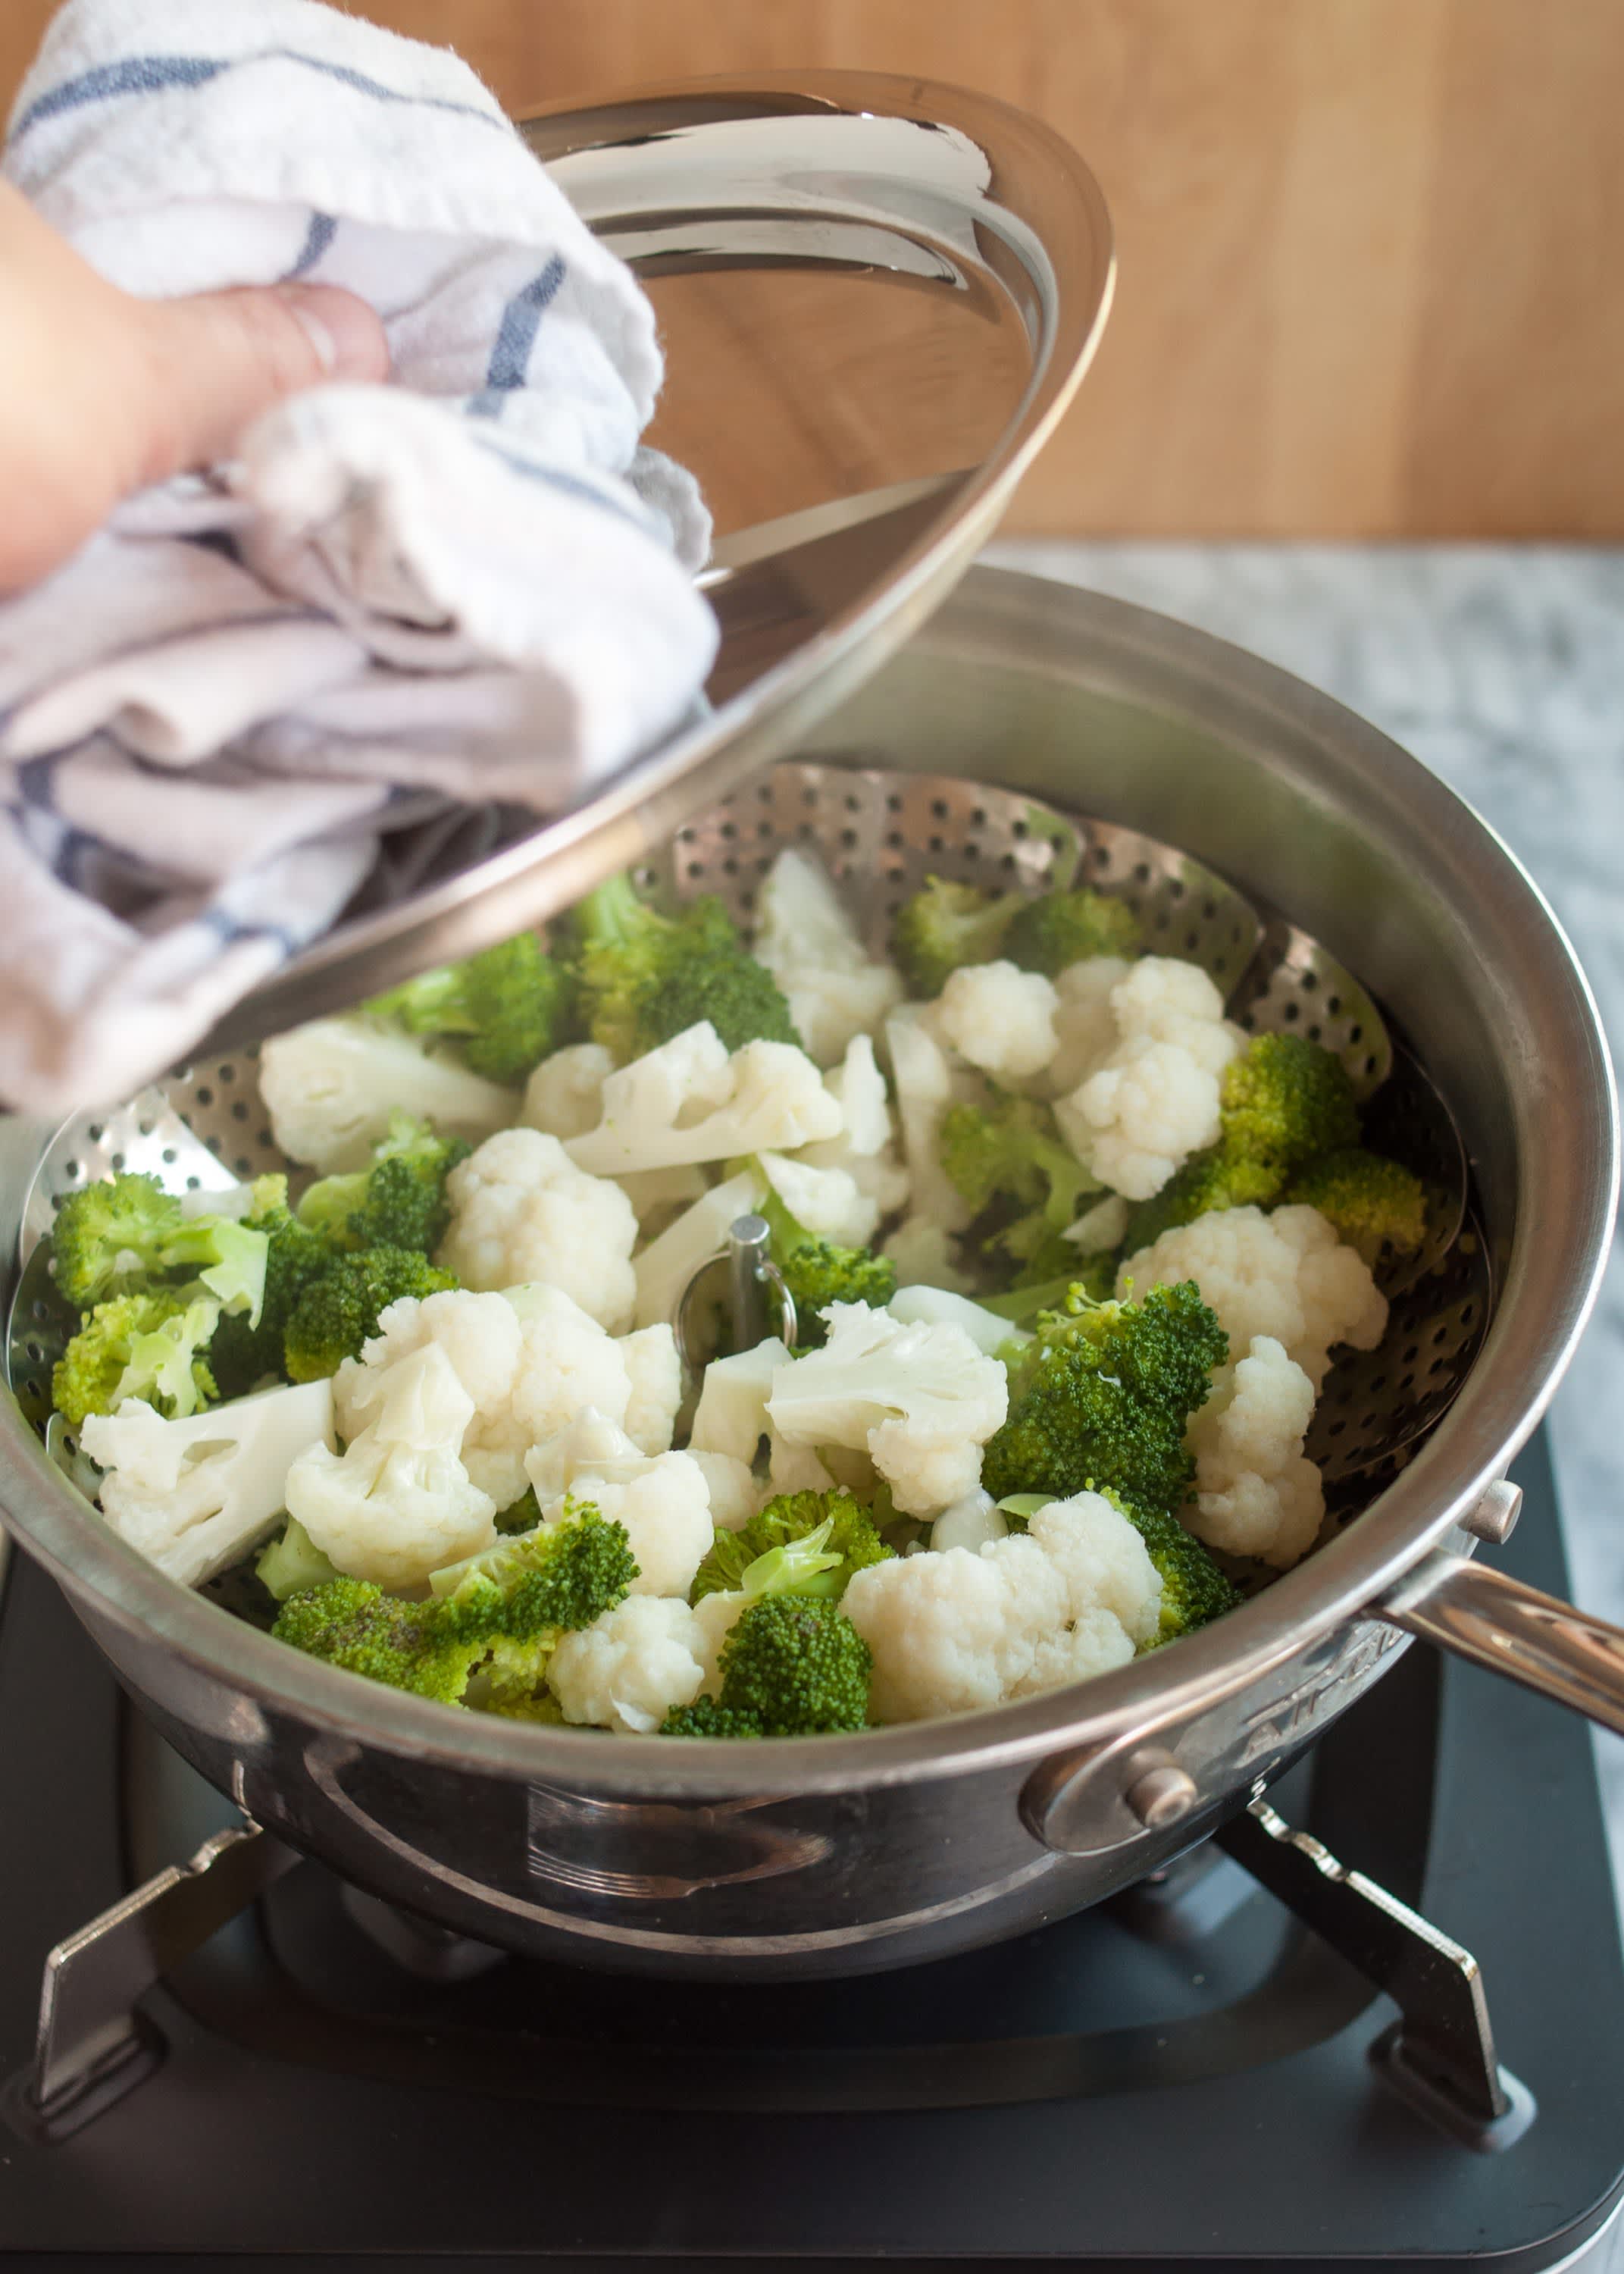 Seasonal Eating: How to Microwave Steam Vegetables